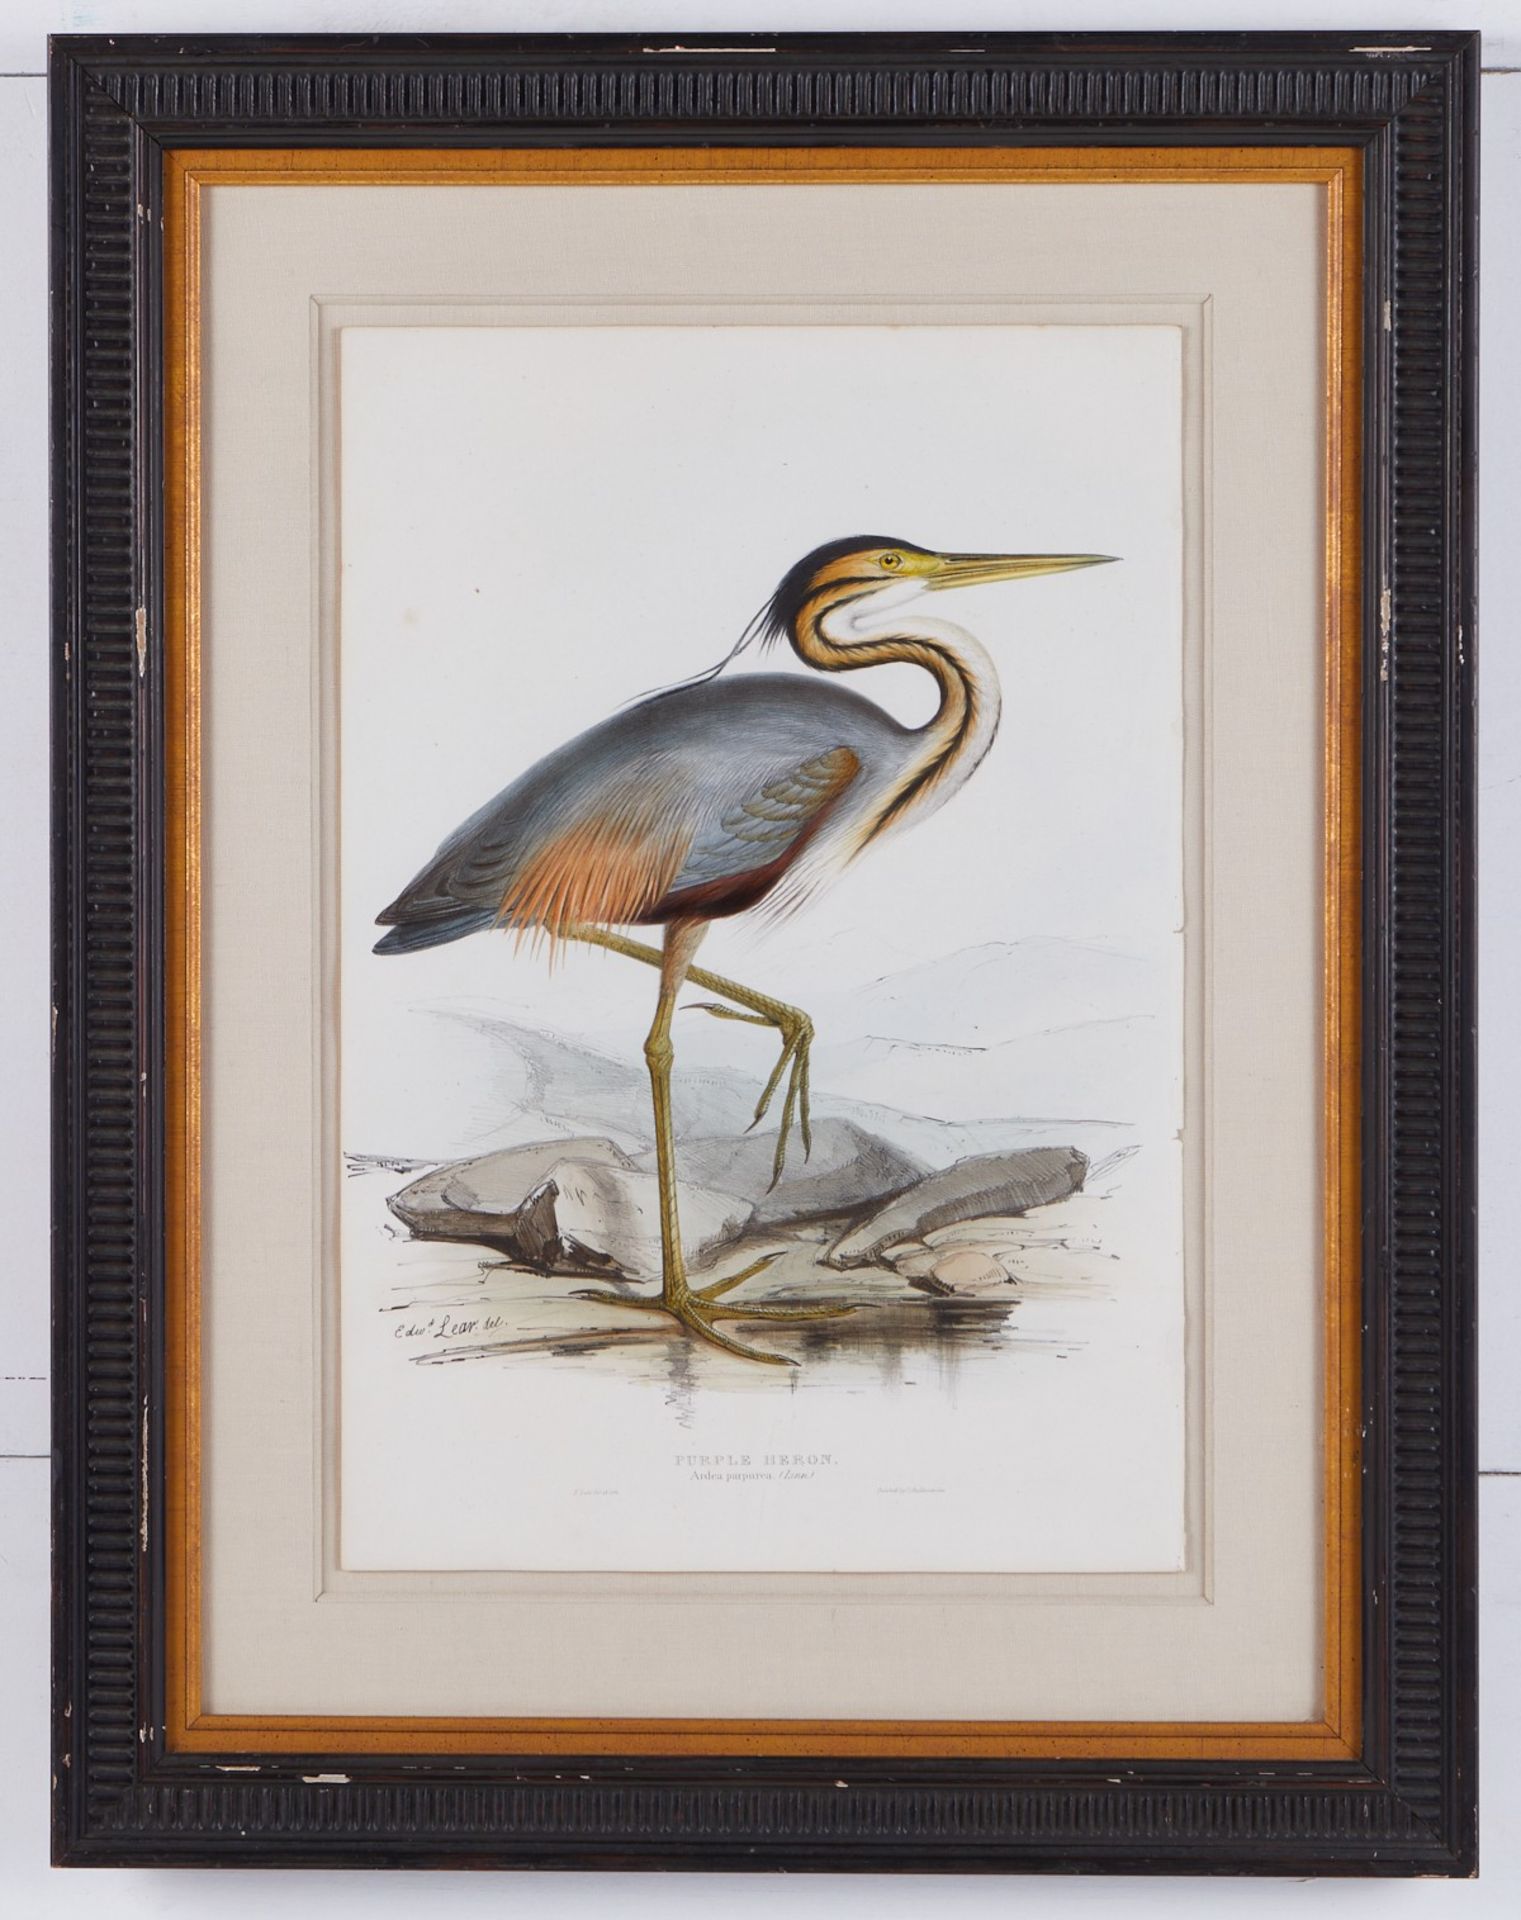 Grp: 2 John Gould Bird Prints from "Birds of Europe" - Bild 3 aus 15